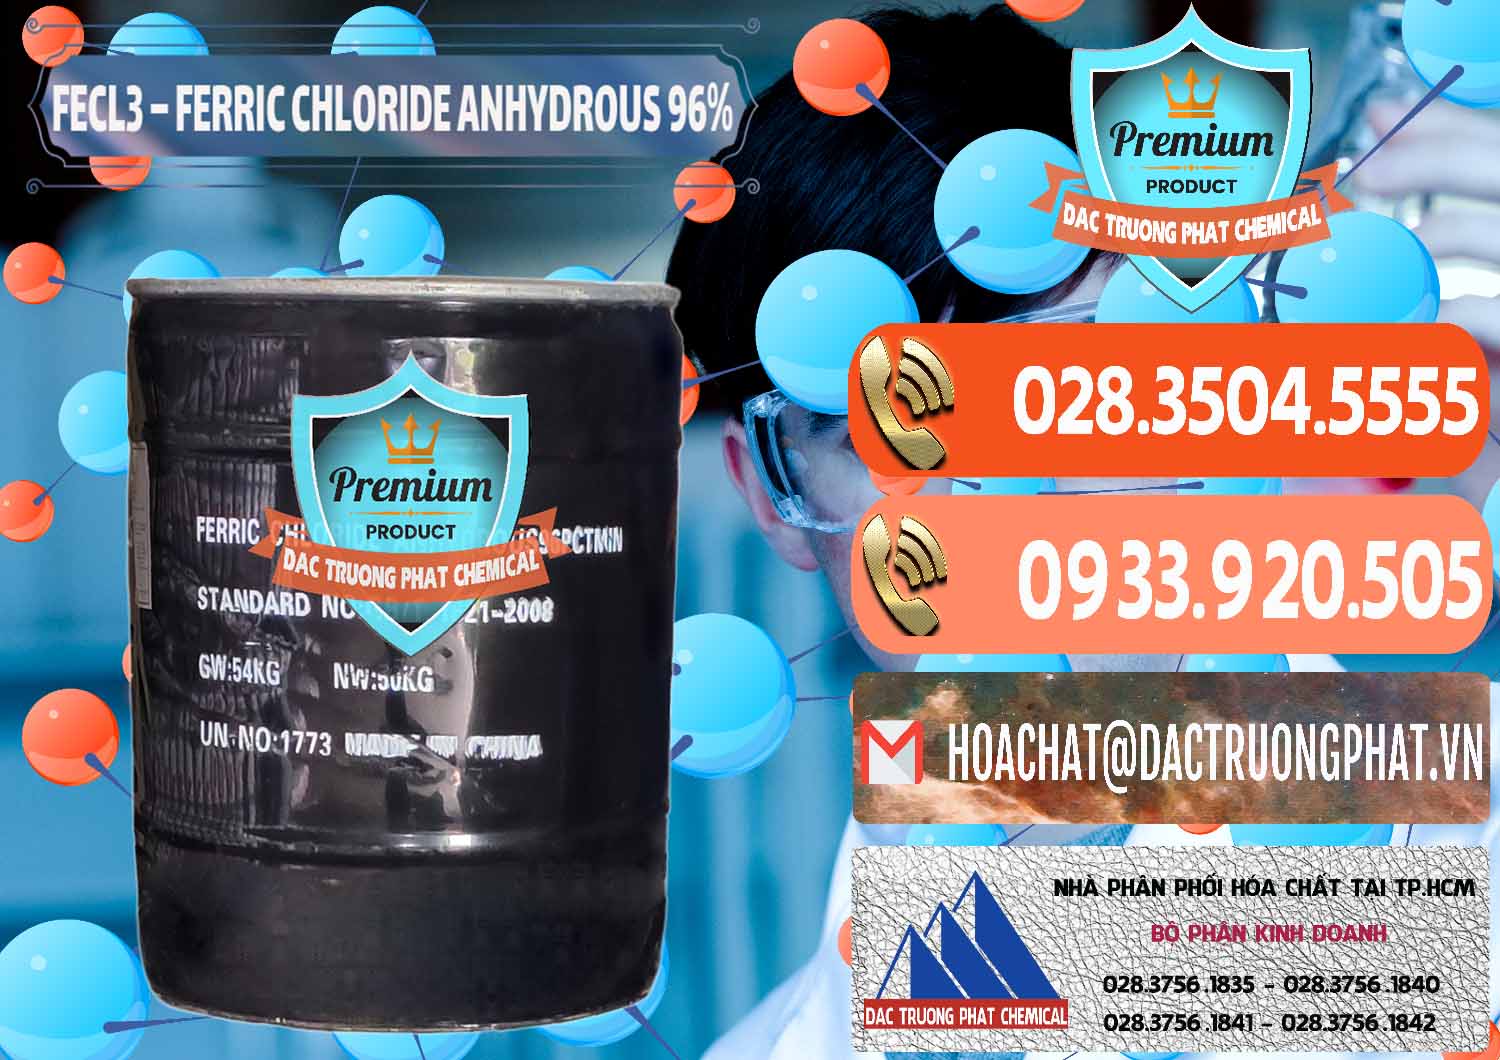 Nơi chuyên kinh doanh và bán FECL3 – Ferric Chloride Anhydrous 96% Trung Quốc China - 0065 - Phân phối ( nhập khẩu ) hóa chất tại TP.HCM - hoachatmientay.com